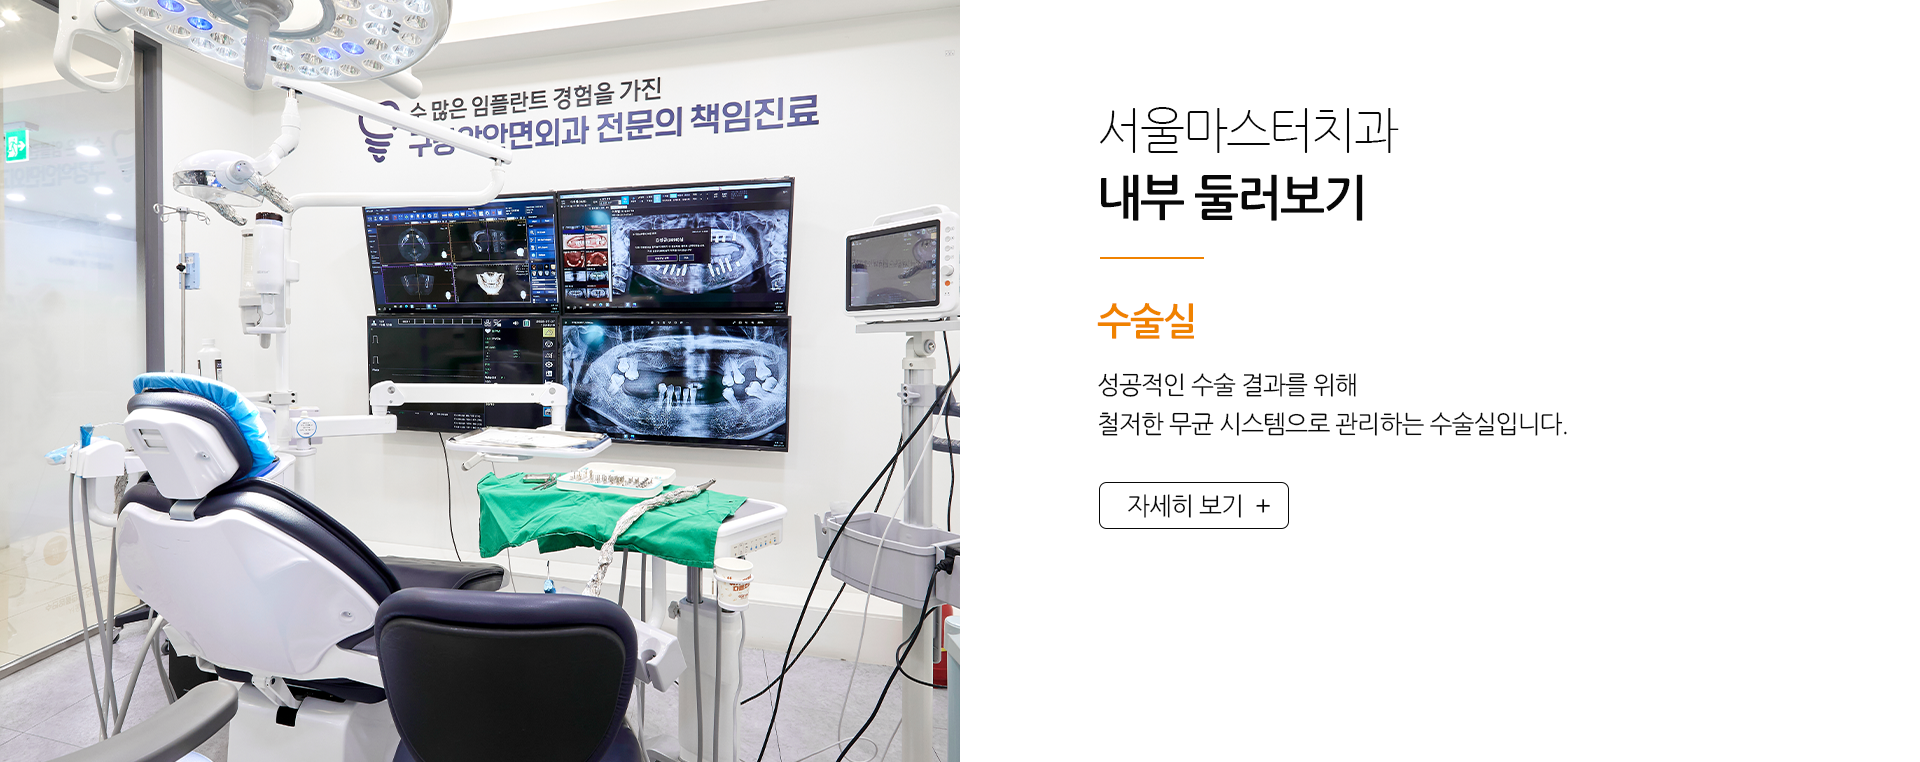 서울마스터치과-내부-둘러보기-수술실-성공적인-수술-결과를-위해-철저한-무균-시스템으로-관리하는-수술실입니다